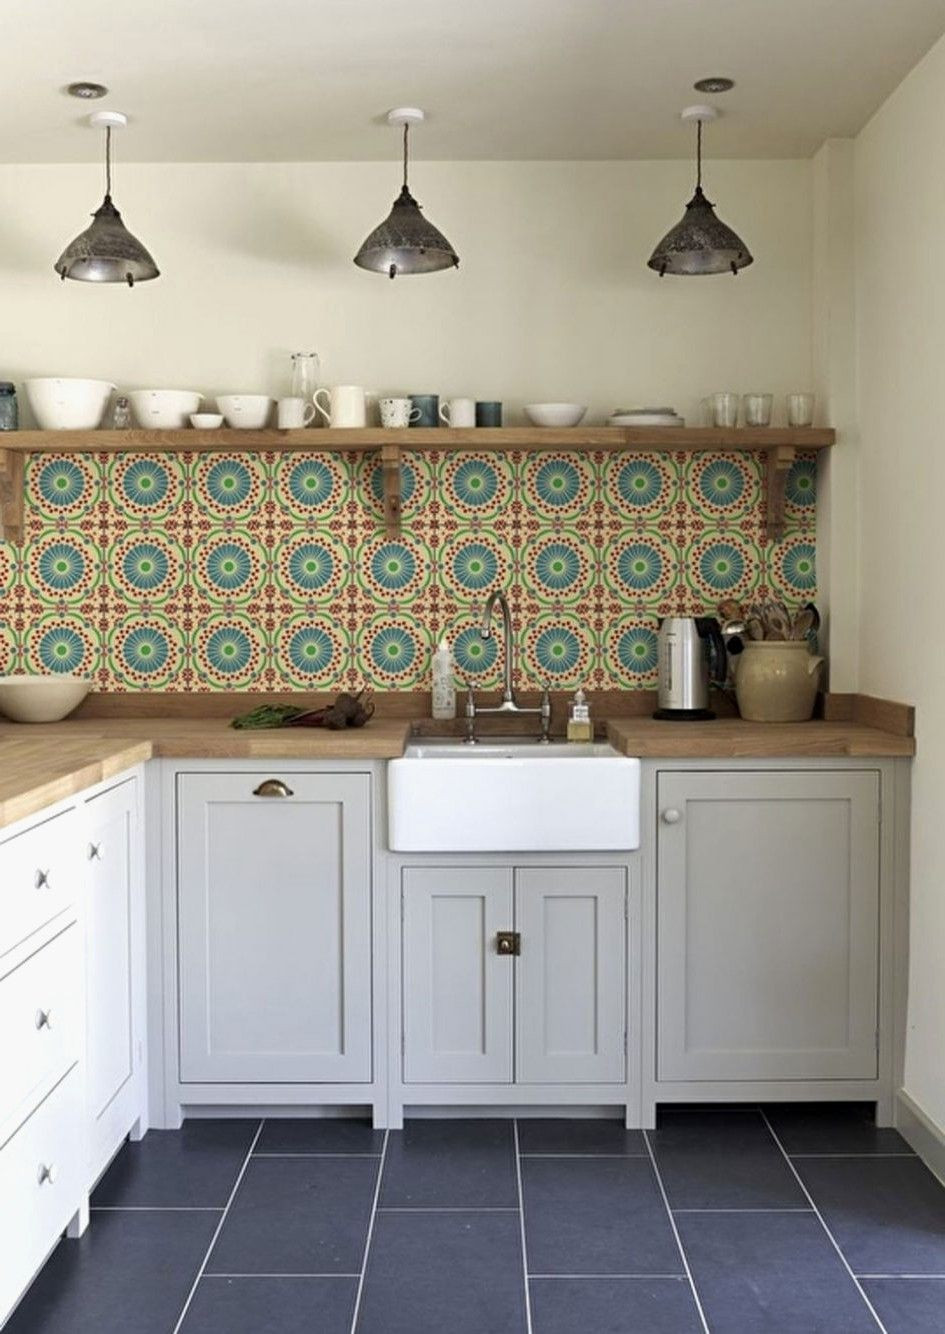 Vintage Kitchen Tiles
 Design Simple Modern Kitchen Retro Tiles Wall Fresh